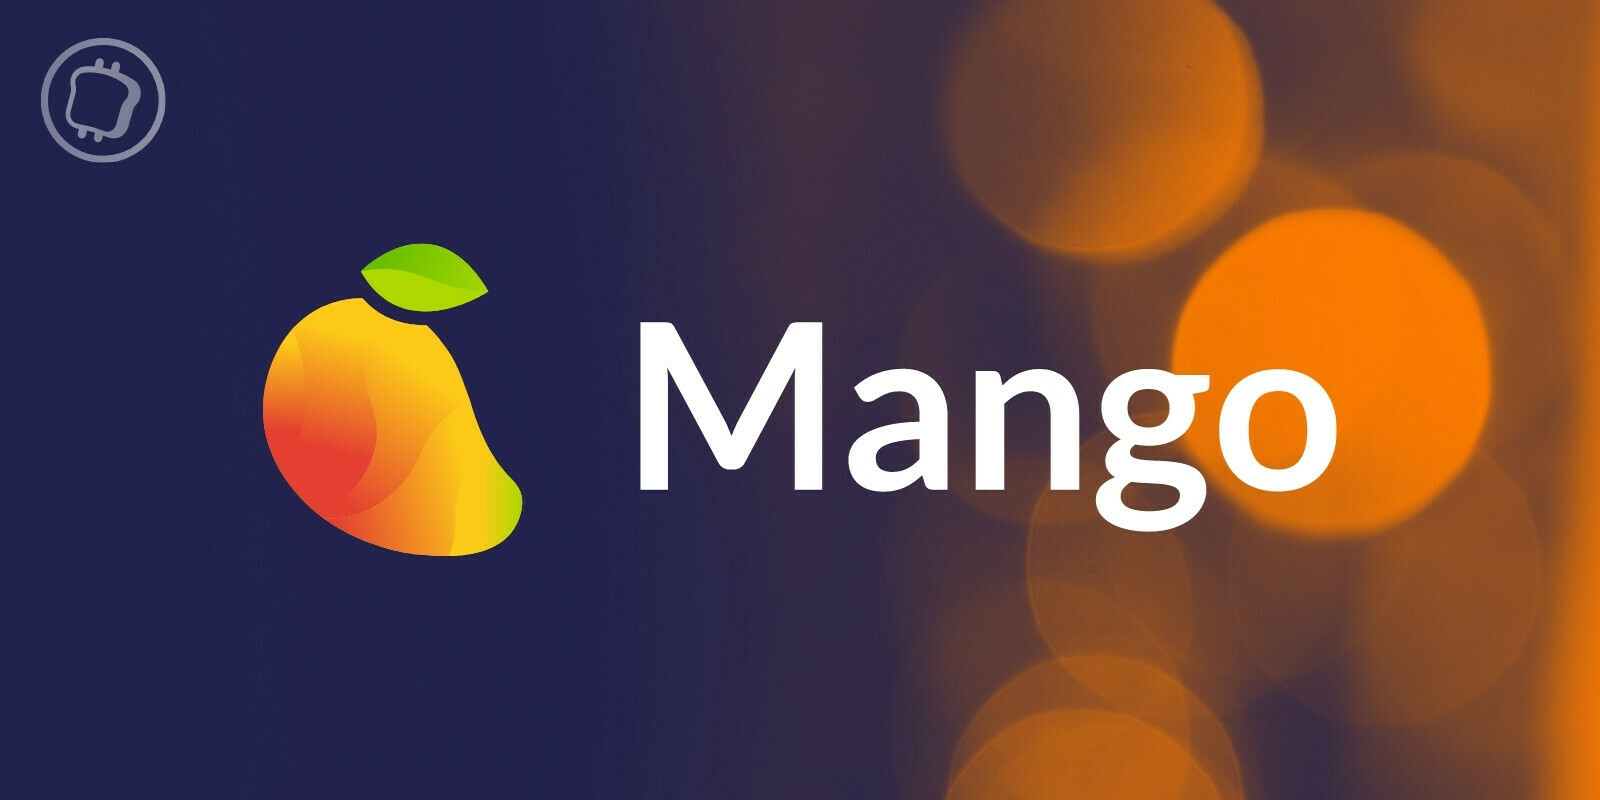 Le hacker de Mango révèle son identité, retourne 67 millions de dollars et affirme que l'opération était légale